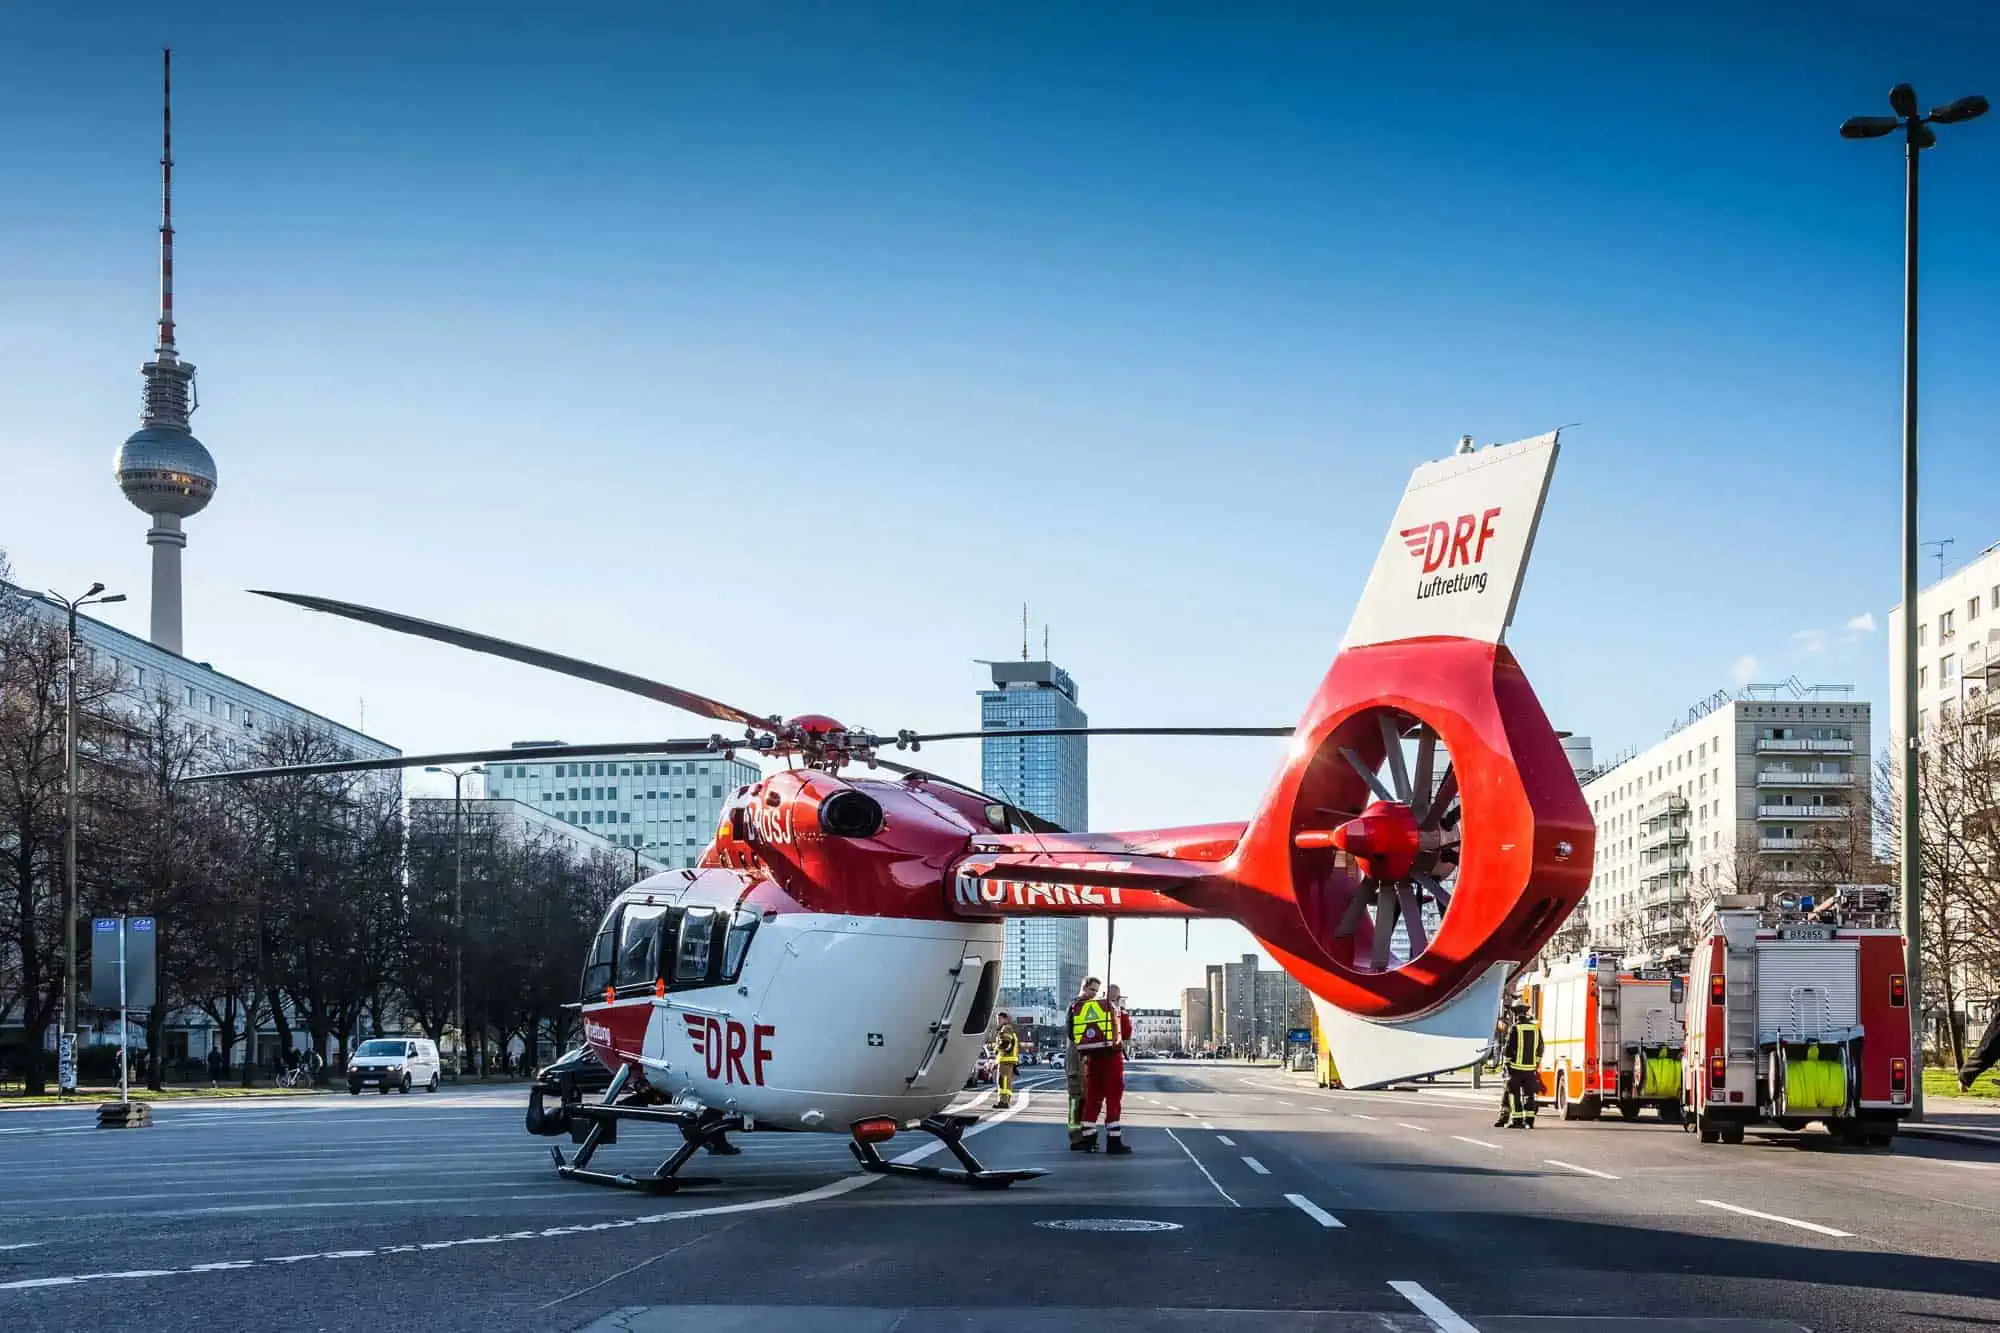 Christoph Berlin ist eine der 29 Stationen, die die DRF Luftrettung in Deutschland betreibt. Bei der Veranstaltung in der Hauptstadt am 18. und 19. März werden Crewmitglieder von Christoph Berlin mit vor Ort sein.